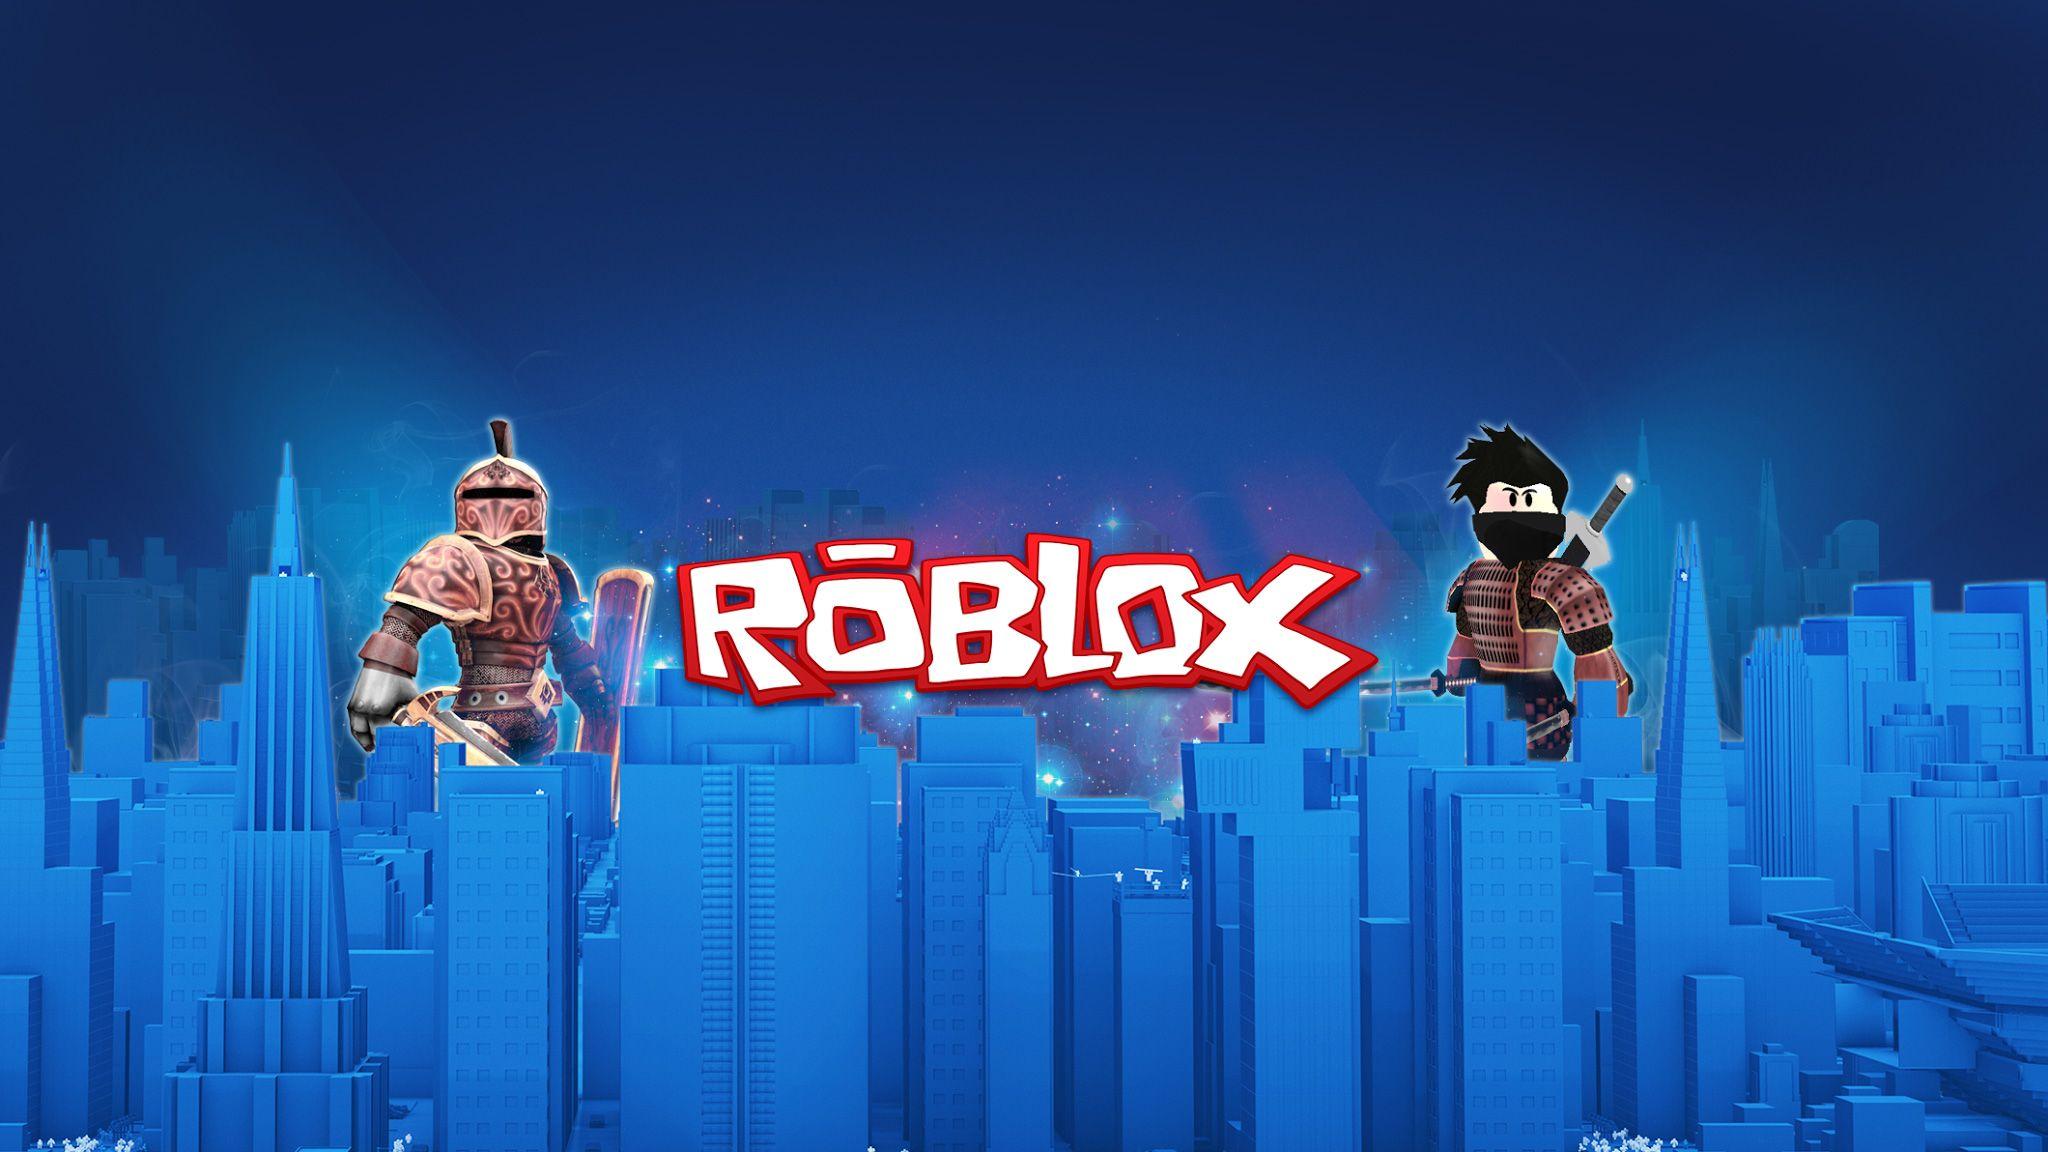 Roblox hacklendi mi? Roblox neden çöktü, ne zaman açılacak?